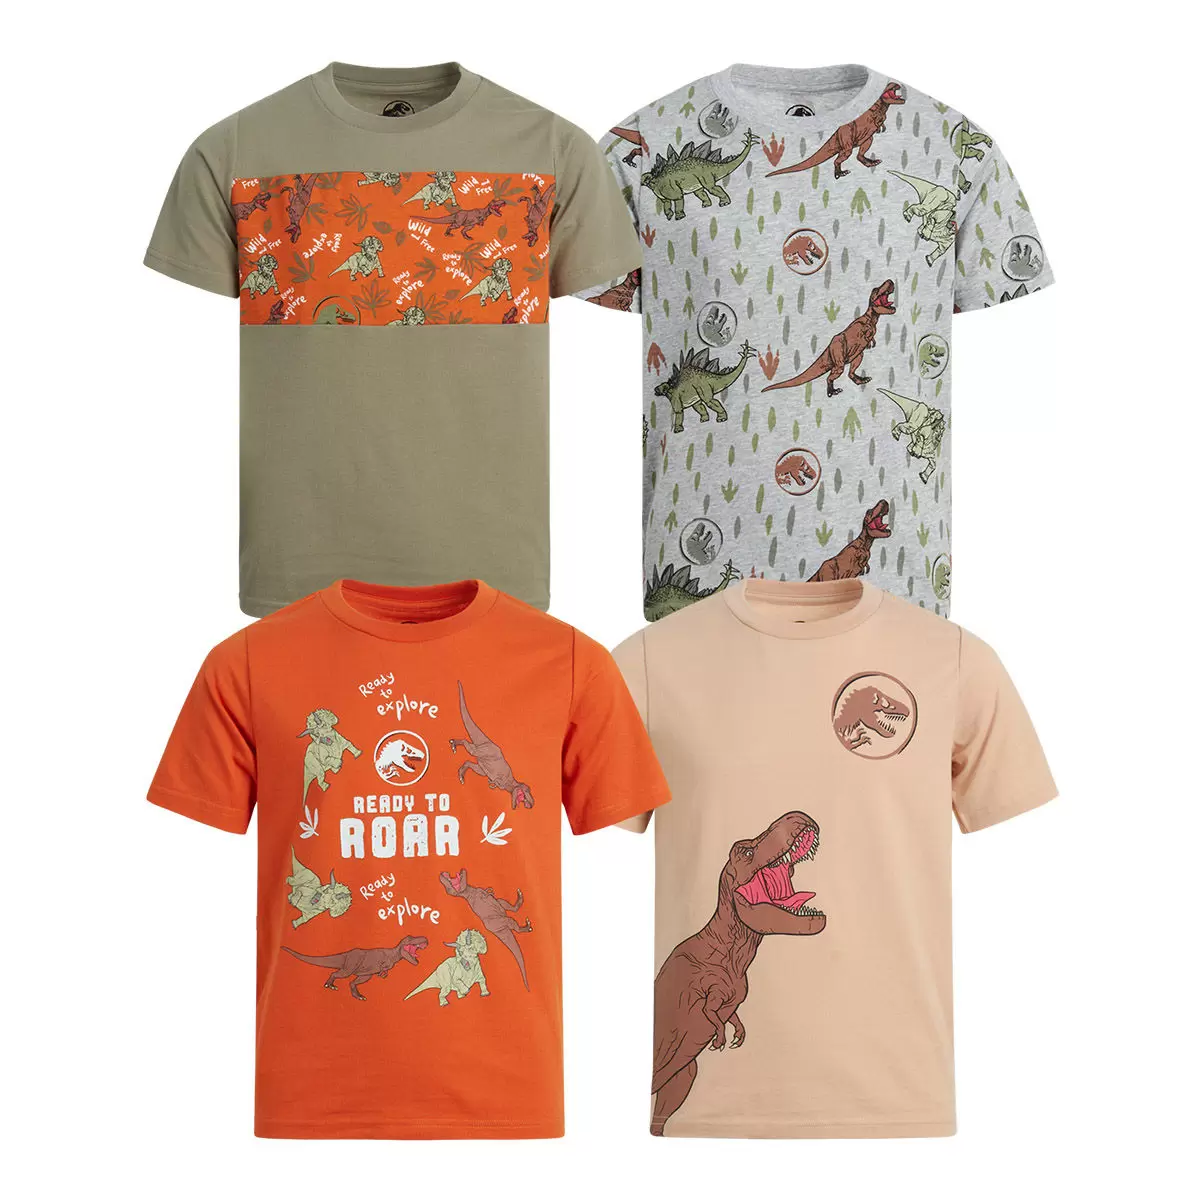 兒童卡通圖案短袖上衣四件組 Jurassic Park 3T